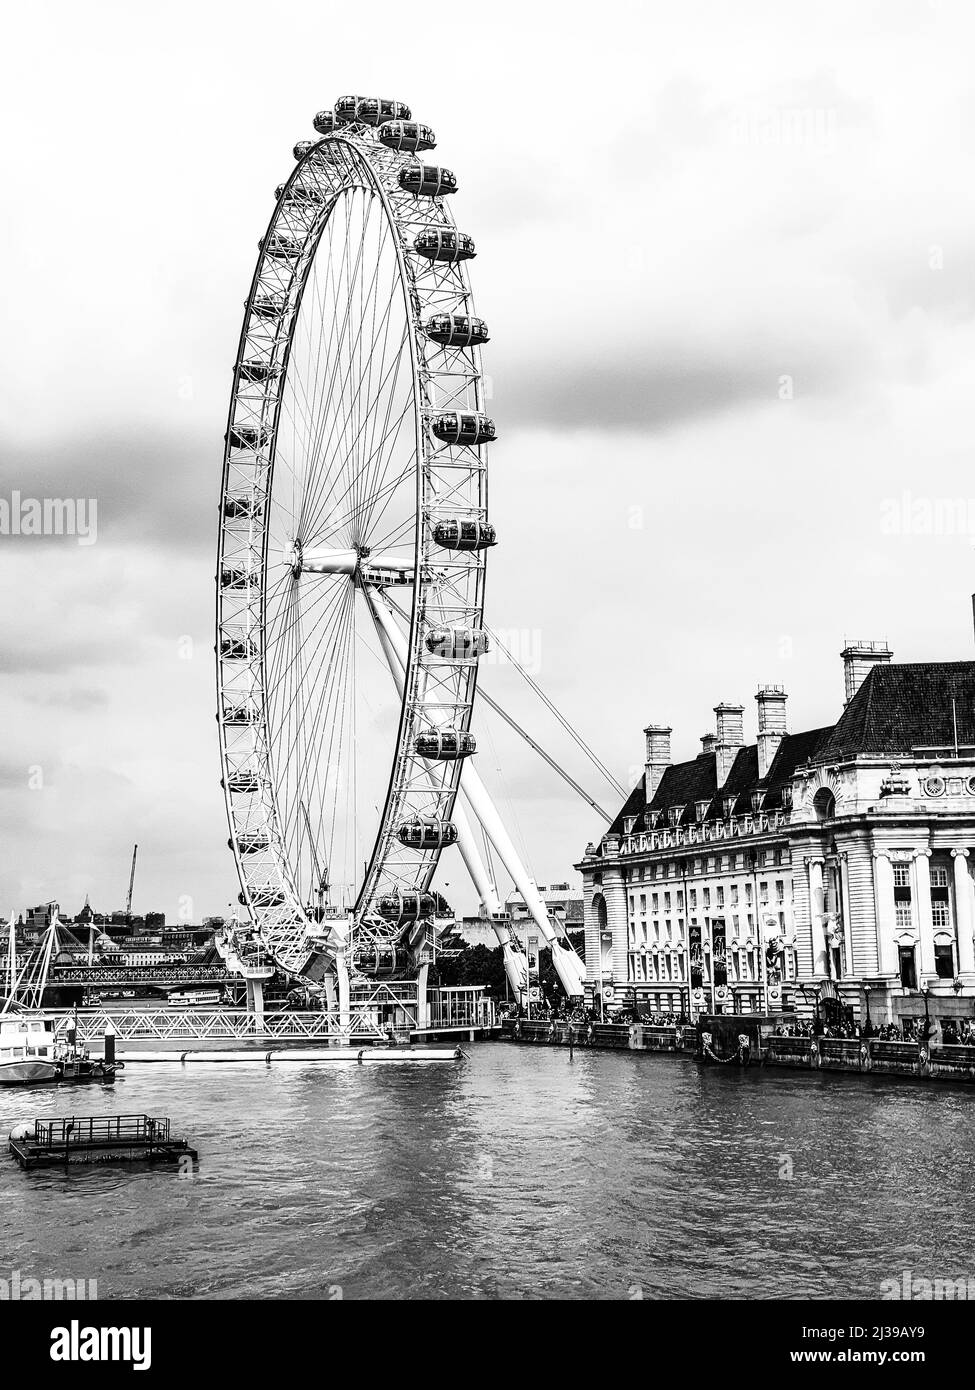 Photo verticale en niveaux de gris du London Eye (roue du millénaire) et de la Tamise Banque D'Images